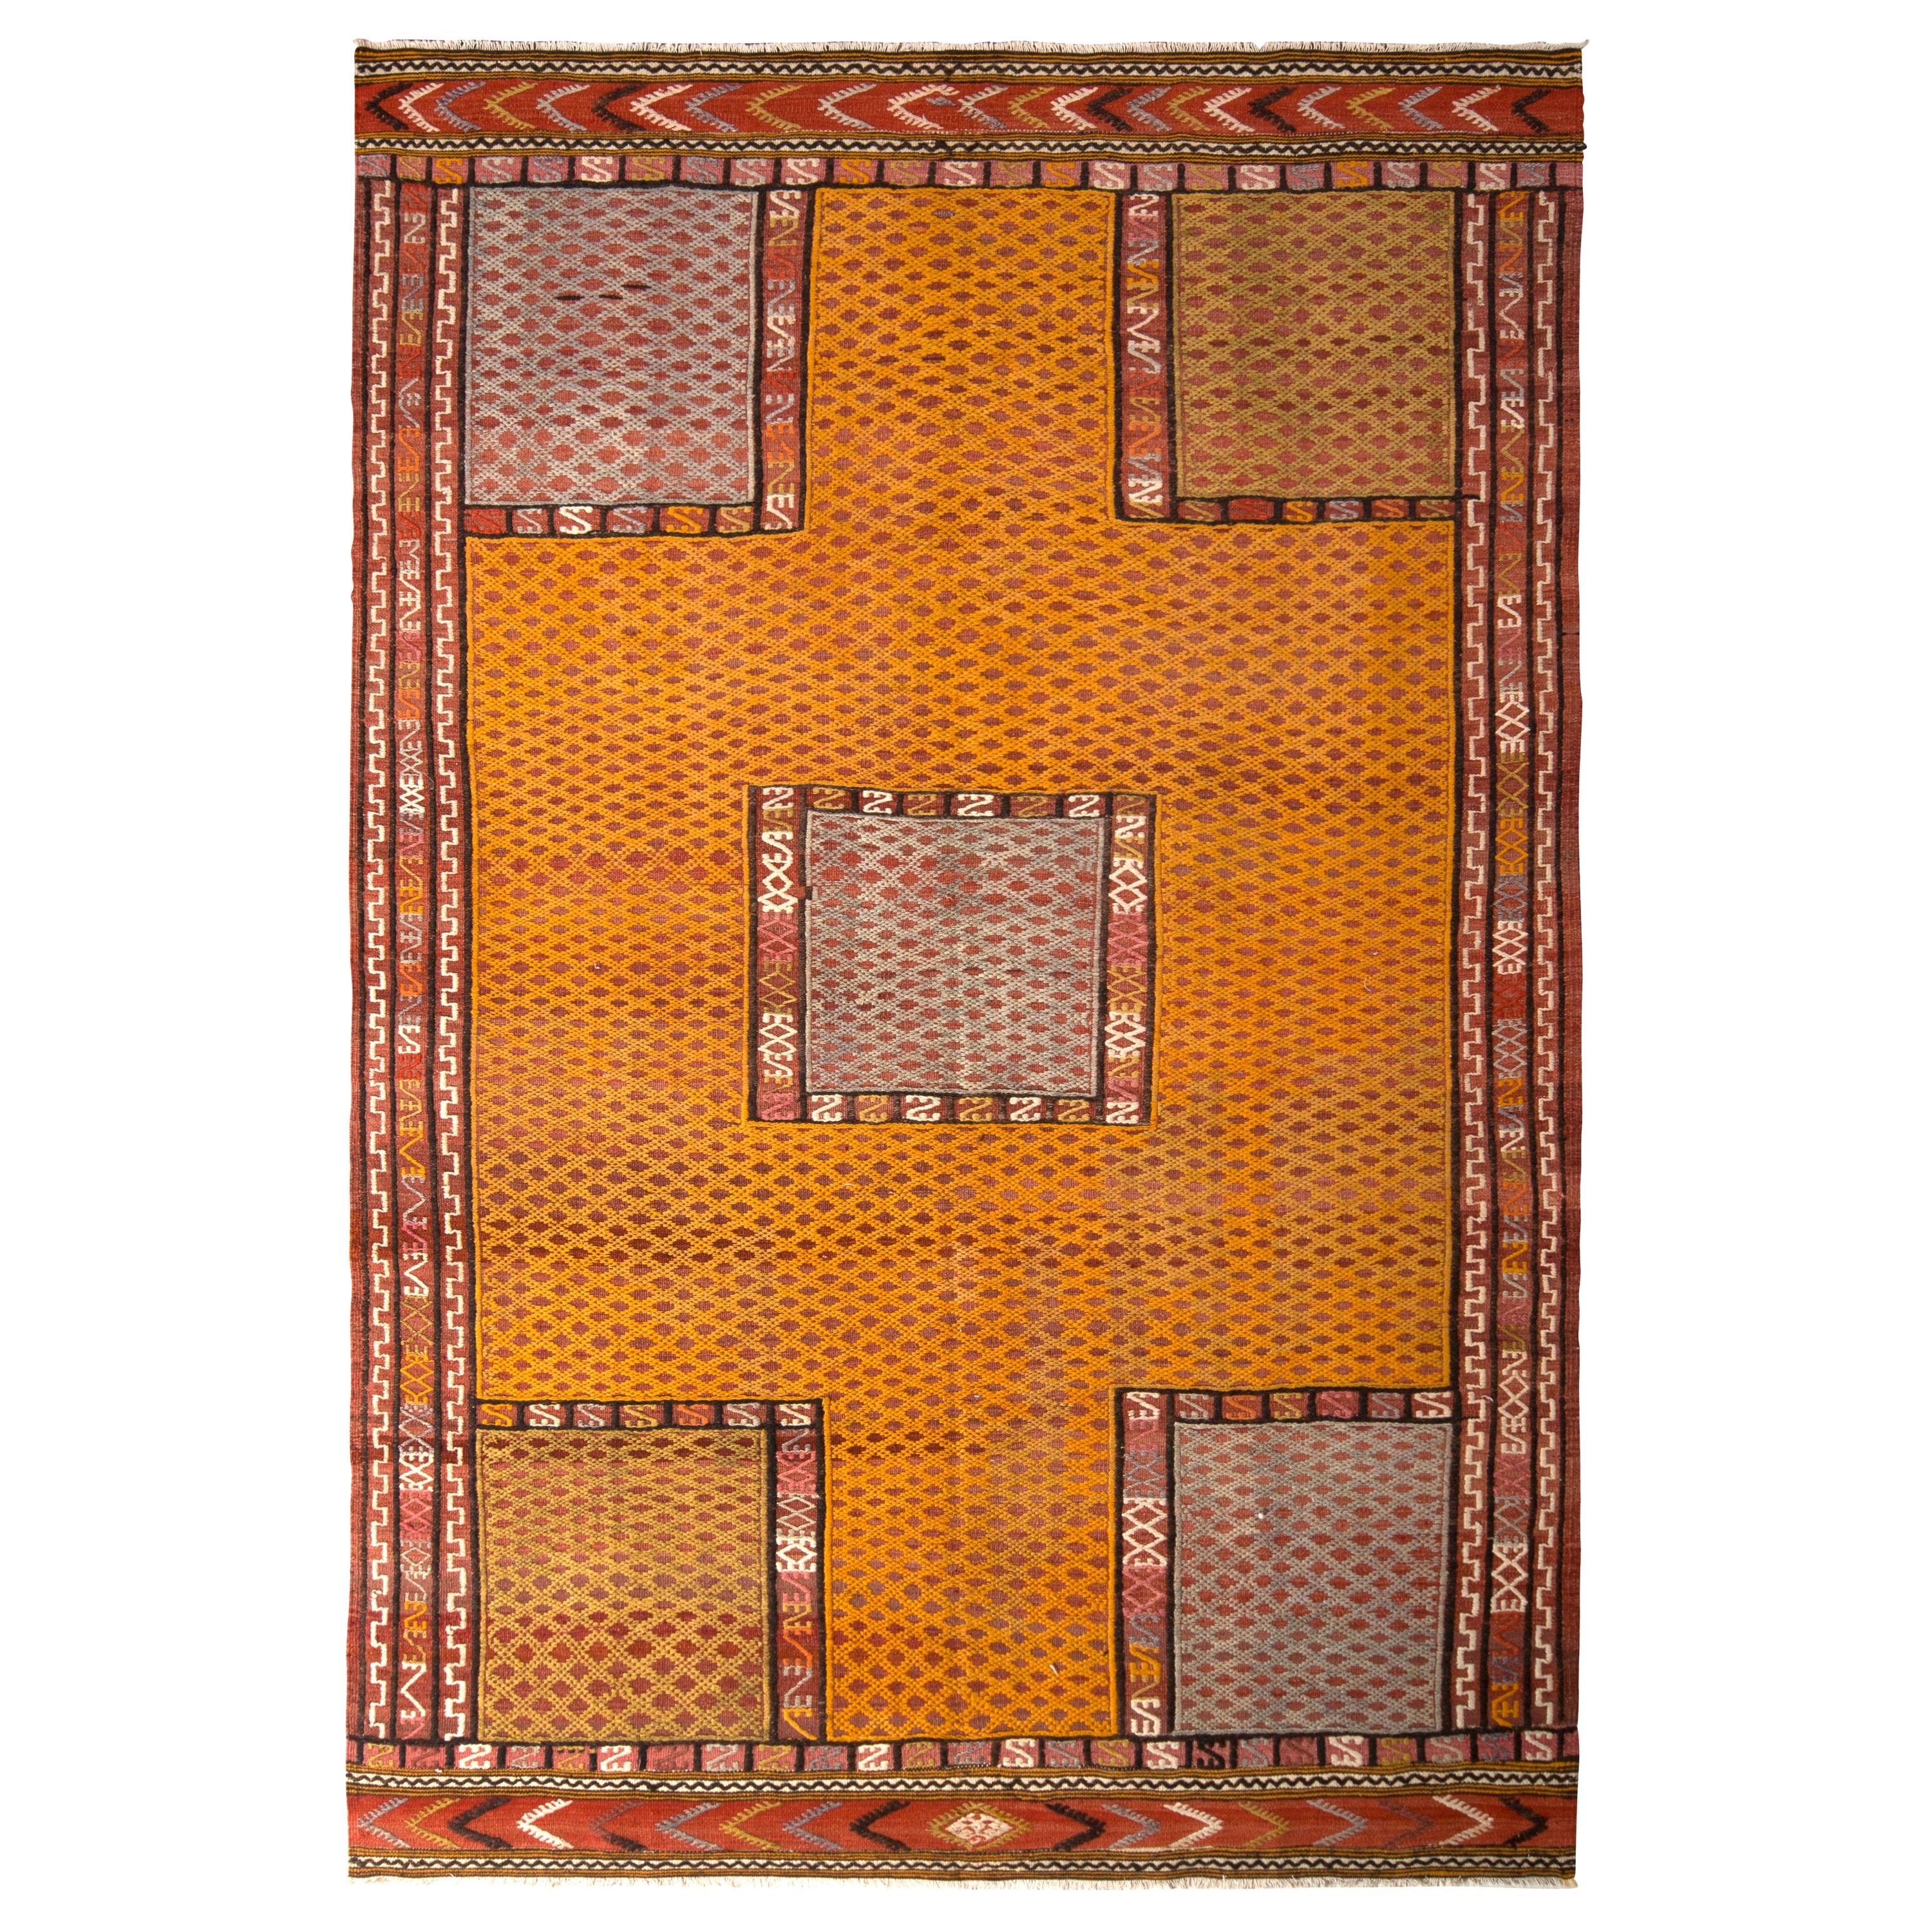 Handmade Vintage Turkish Kilim Rug Gold Multi-Color Textural Geometric Pattern